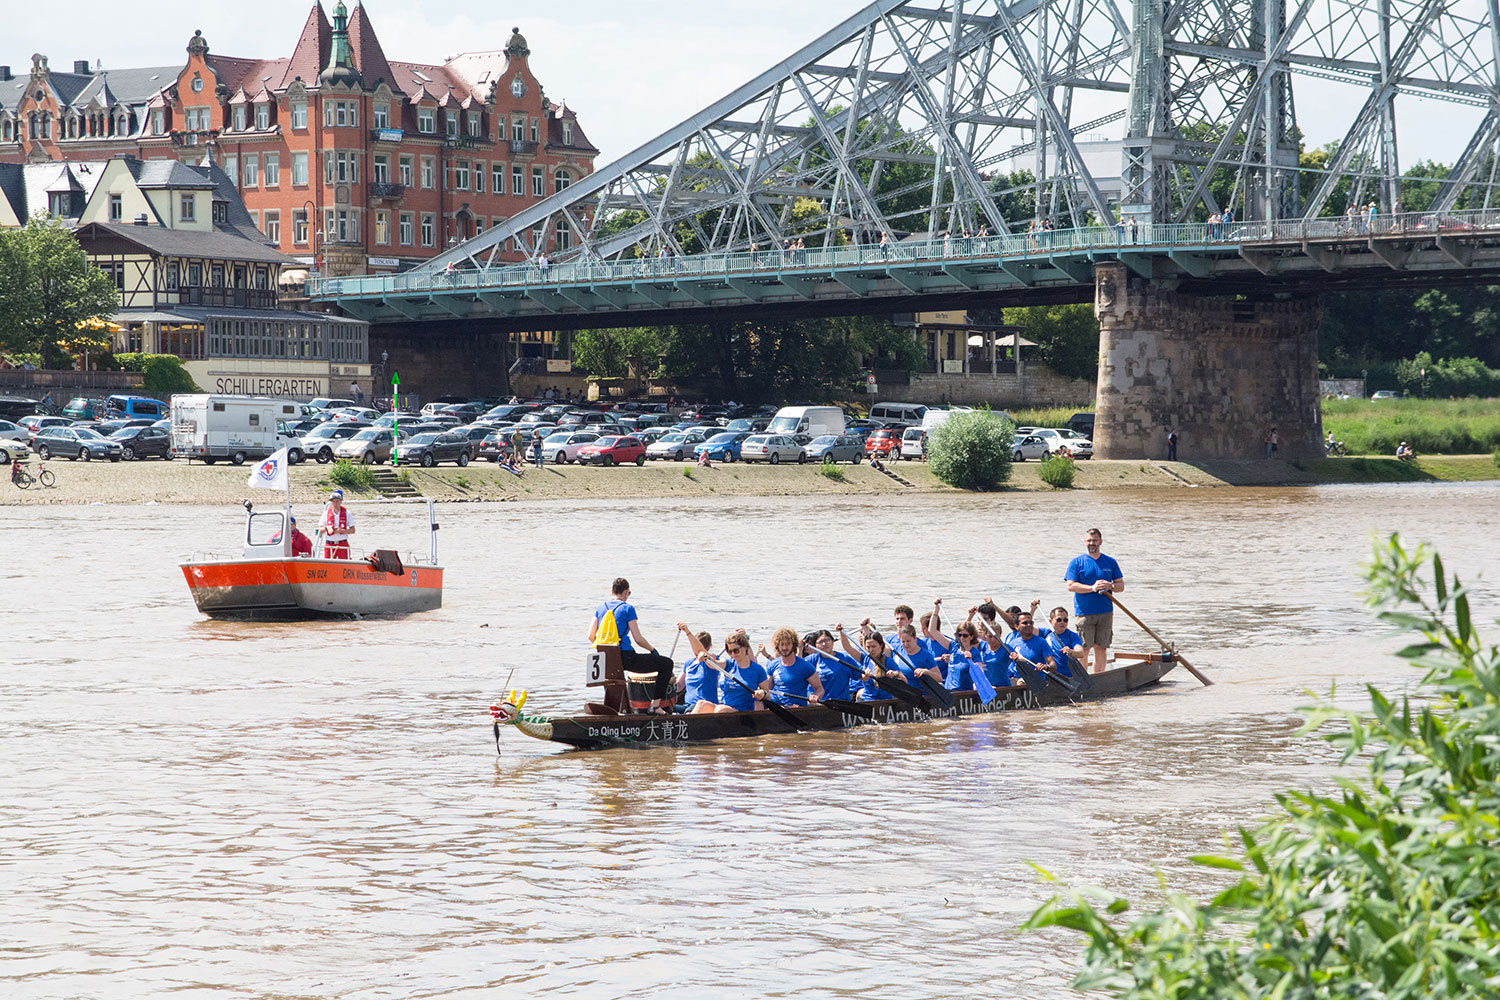 Schnappschuss vom Drachenbootrennen auf der Elbe. Zum diesjährigen Drachenbootrennen anlässlich des Elbhangfestest steigt auch wieder eine Crew des Kulturbüros der TU Dresden ins Drachenboot. Dafür werden noch Mit-Ruderer gesucht!